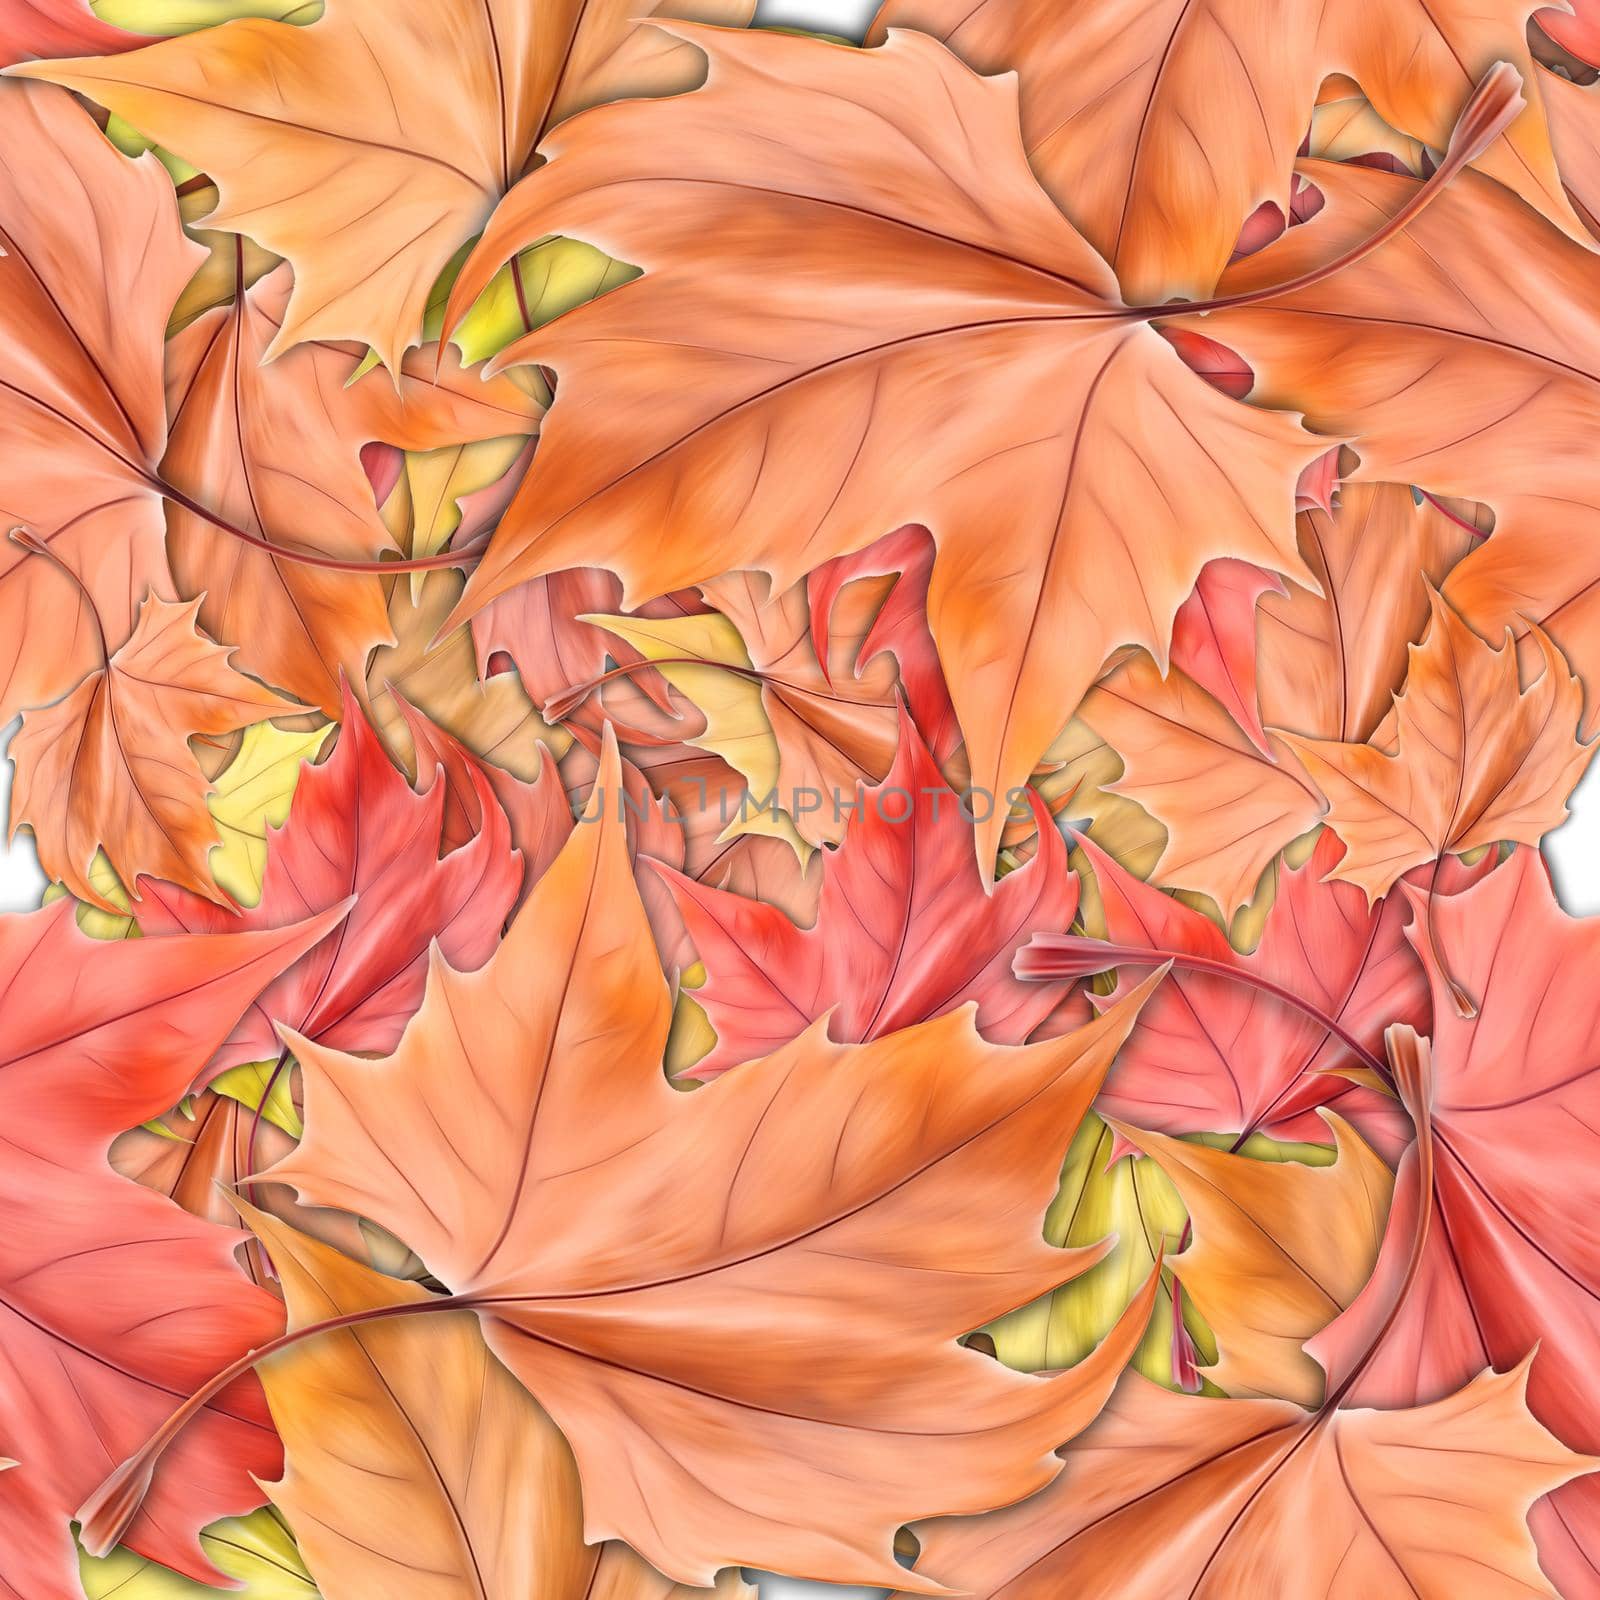 blurred dry autumn leaf by palinchak